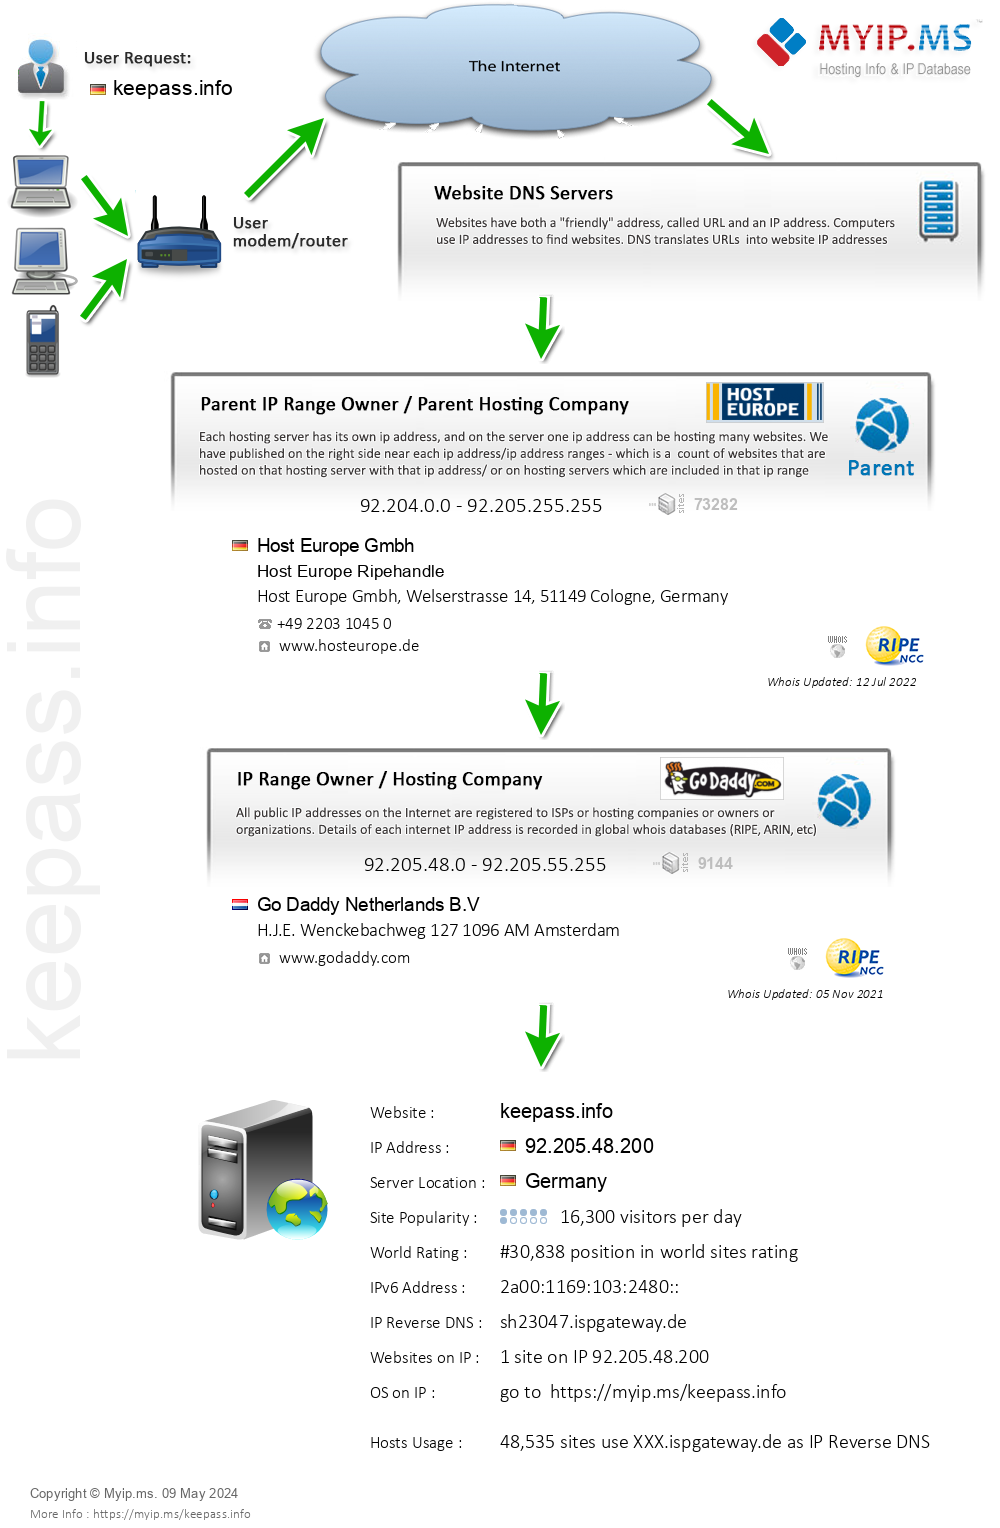 Keepass.info - Website Hosting Visual IP Diagram